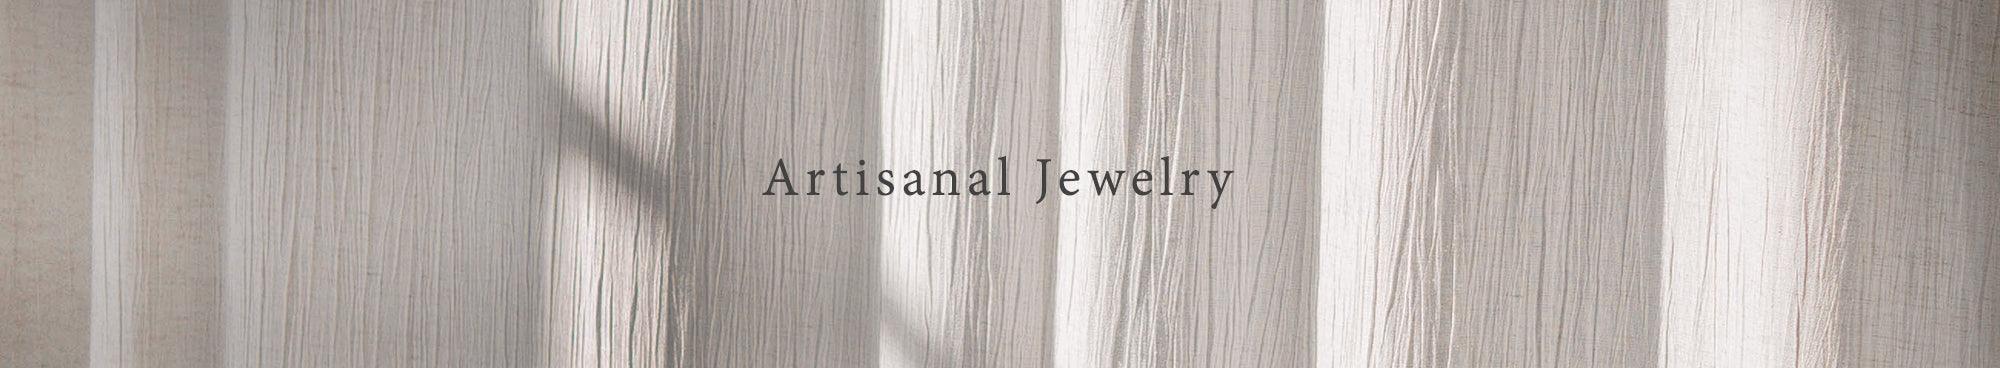 Artisanal Jewelry